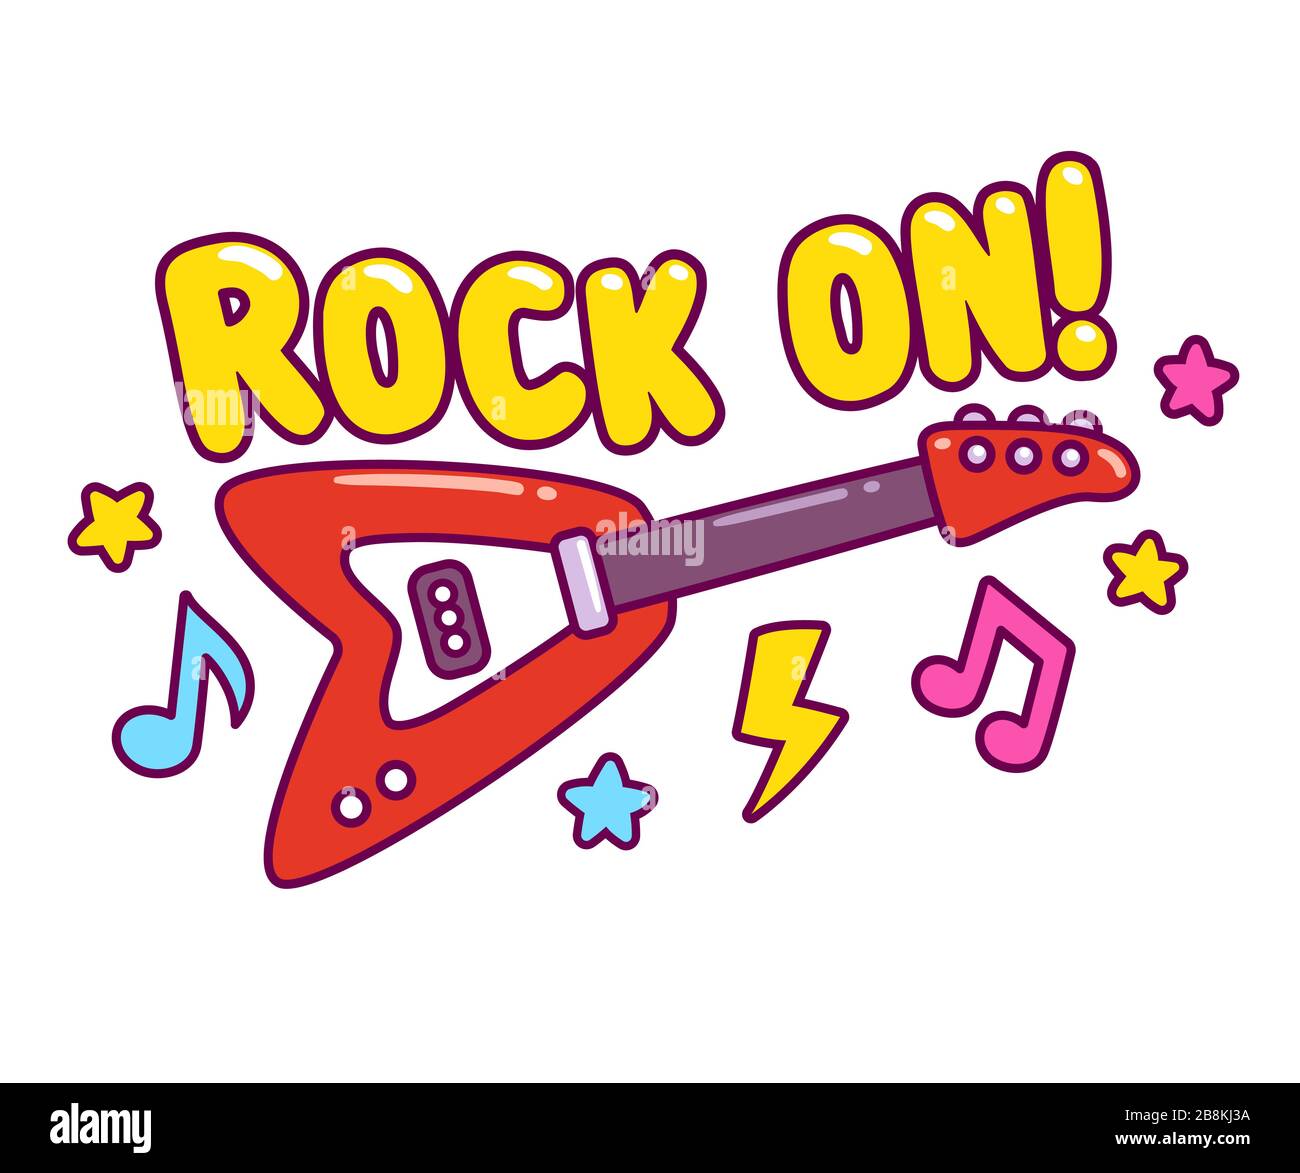 Helle Cartoon E-Gitarre Zeichnung mit coolen Musiknoten und Stars im Comic-Stil  und Text Rock On! Einfache, niedliche Vektorgrafiken für Rock-n-Roll-Musik  Stock-Vektorgrafik - Alamy